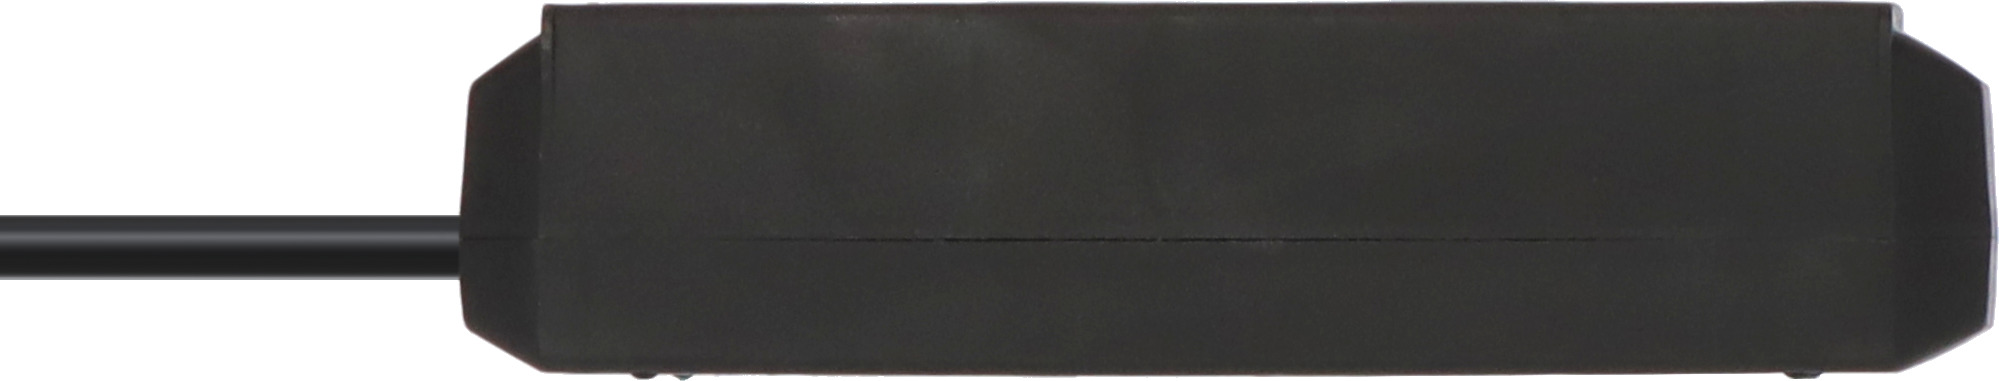 Eco-Line Steckdosenleiste 3-fach (Mehrfachsteckdose mit erhöhtem Berührungsschutz und 1,5m Kabel) schwarz